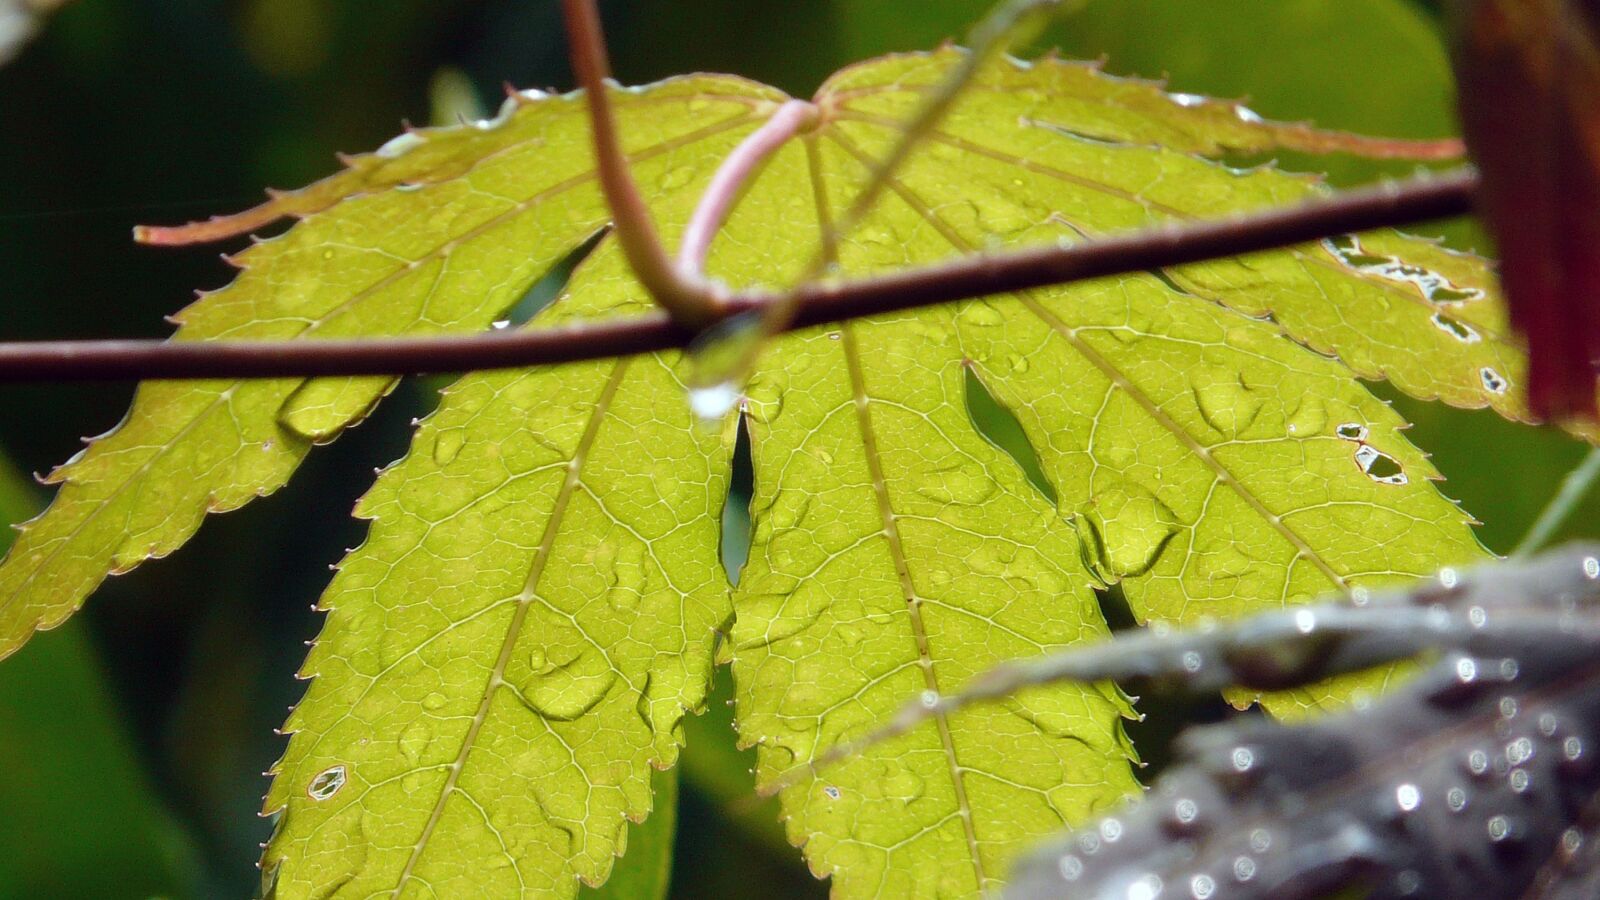 Panasonic DMC-FZ18 sample photo. Rain, drip, leaf photography